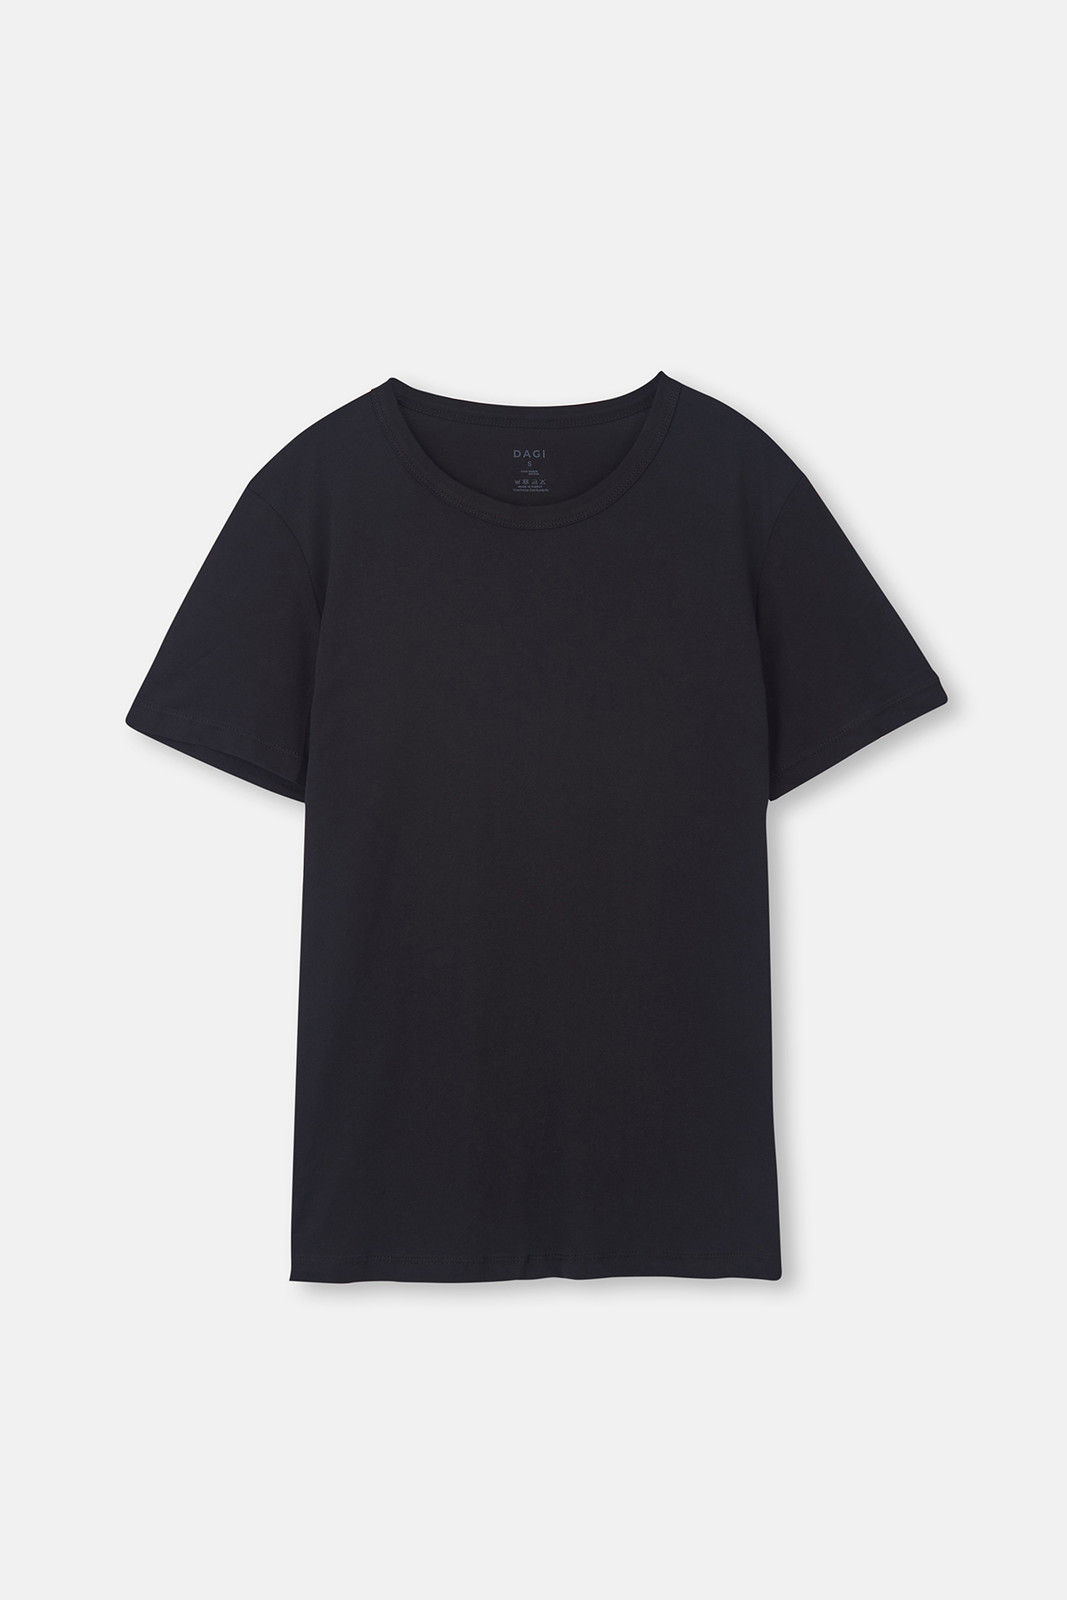 Dagi Black D1160 O Neck T-Shirt